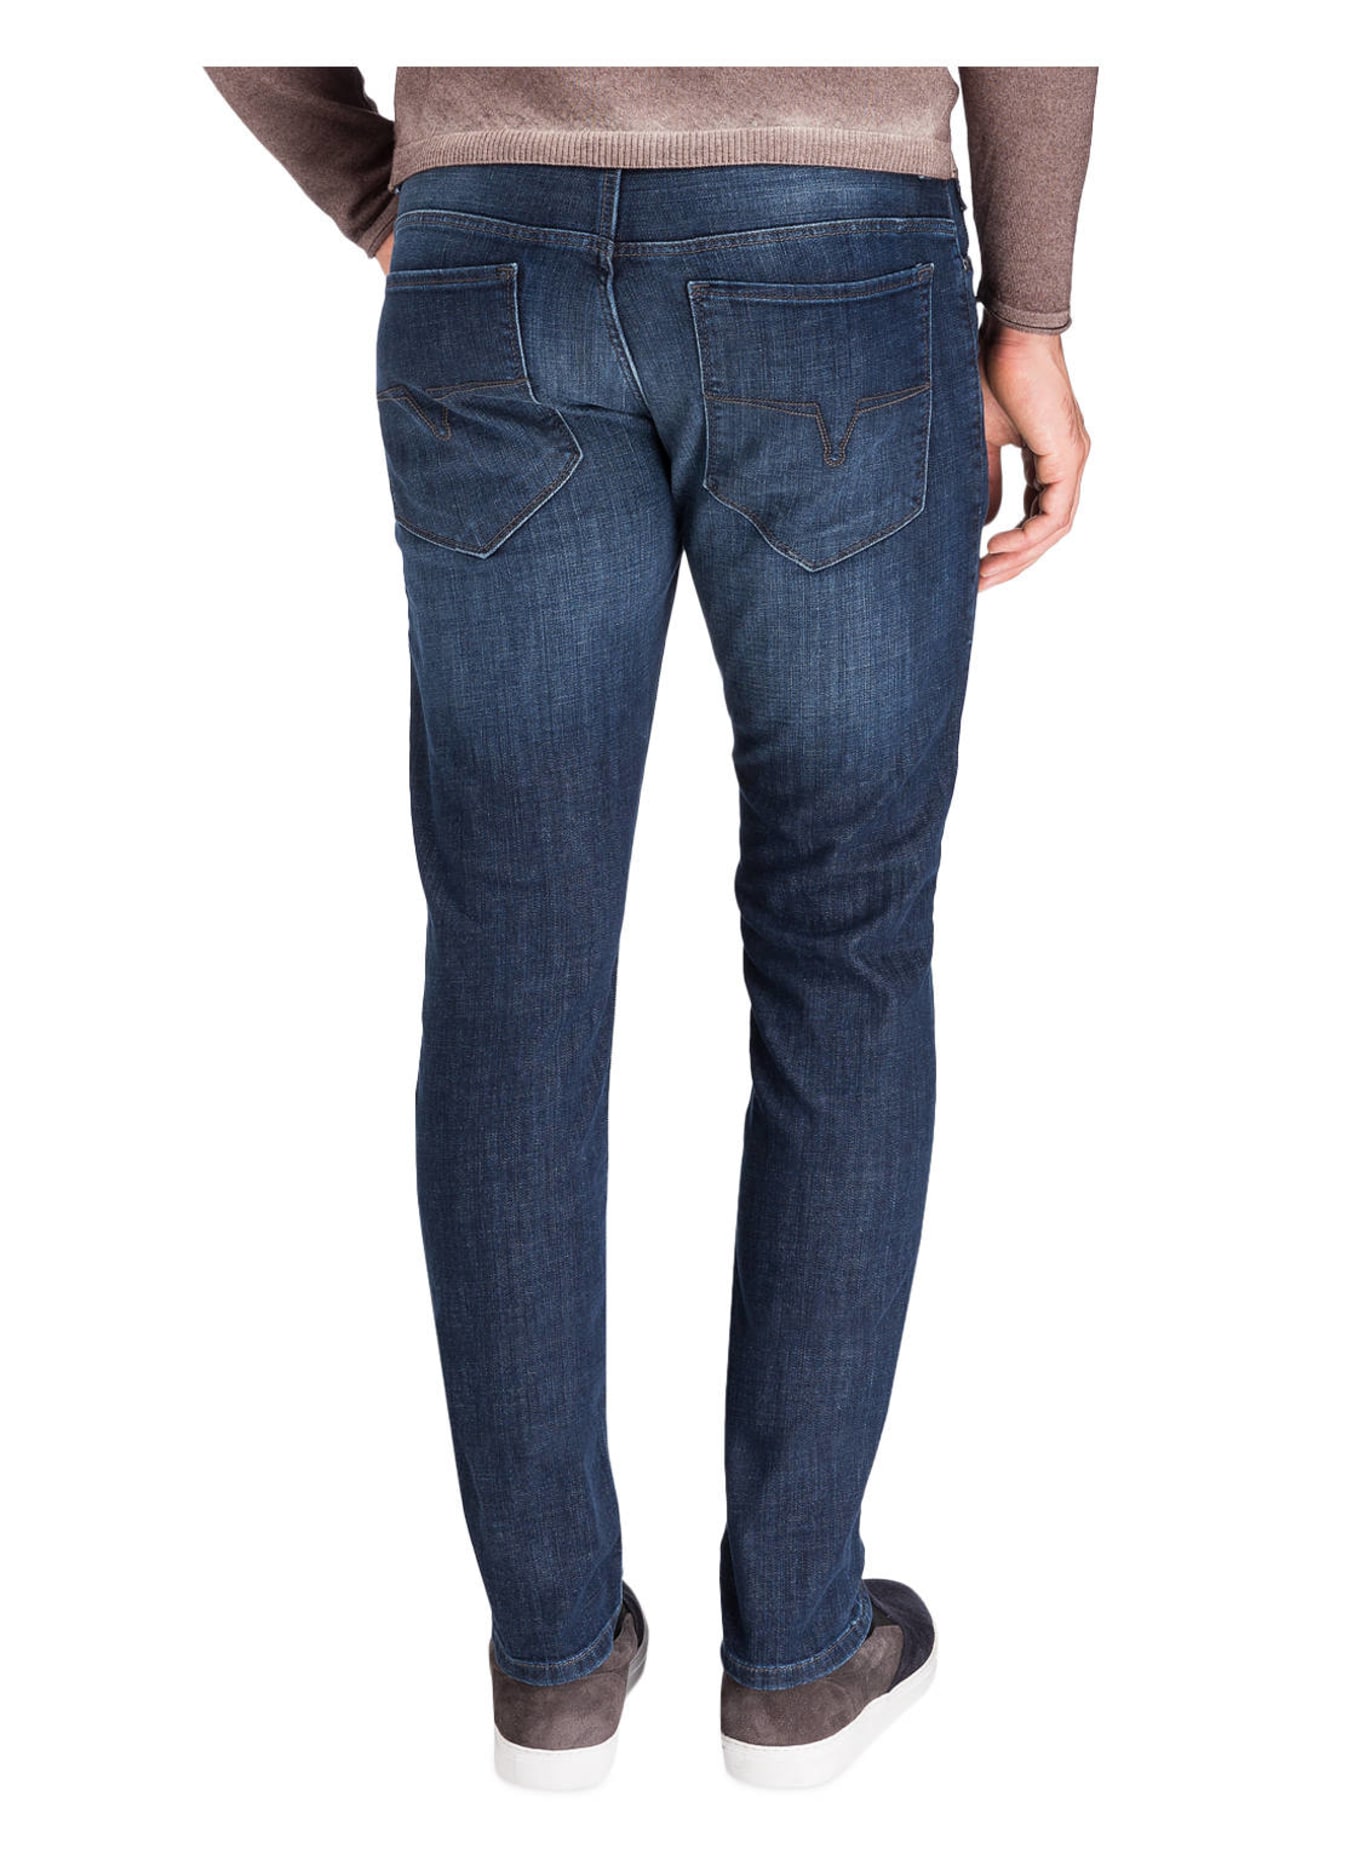 JOOP! Jeans STEPHEN Slim Fit, Farbe: 415 NAVY (Bild 3)